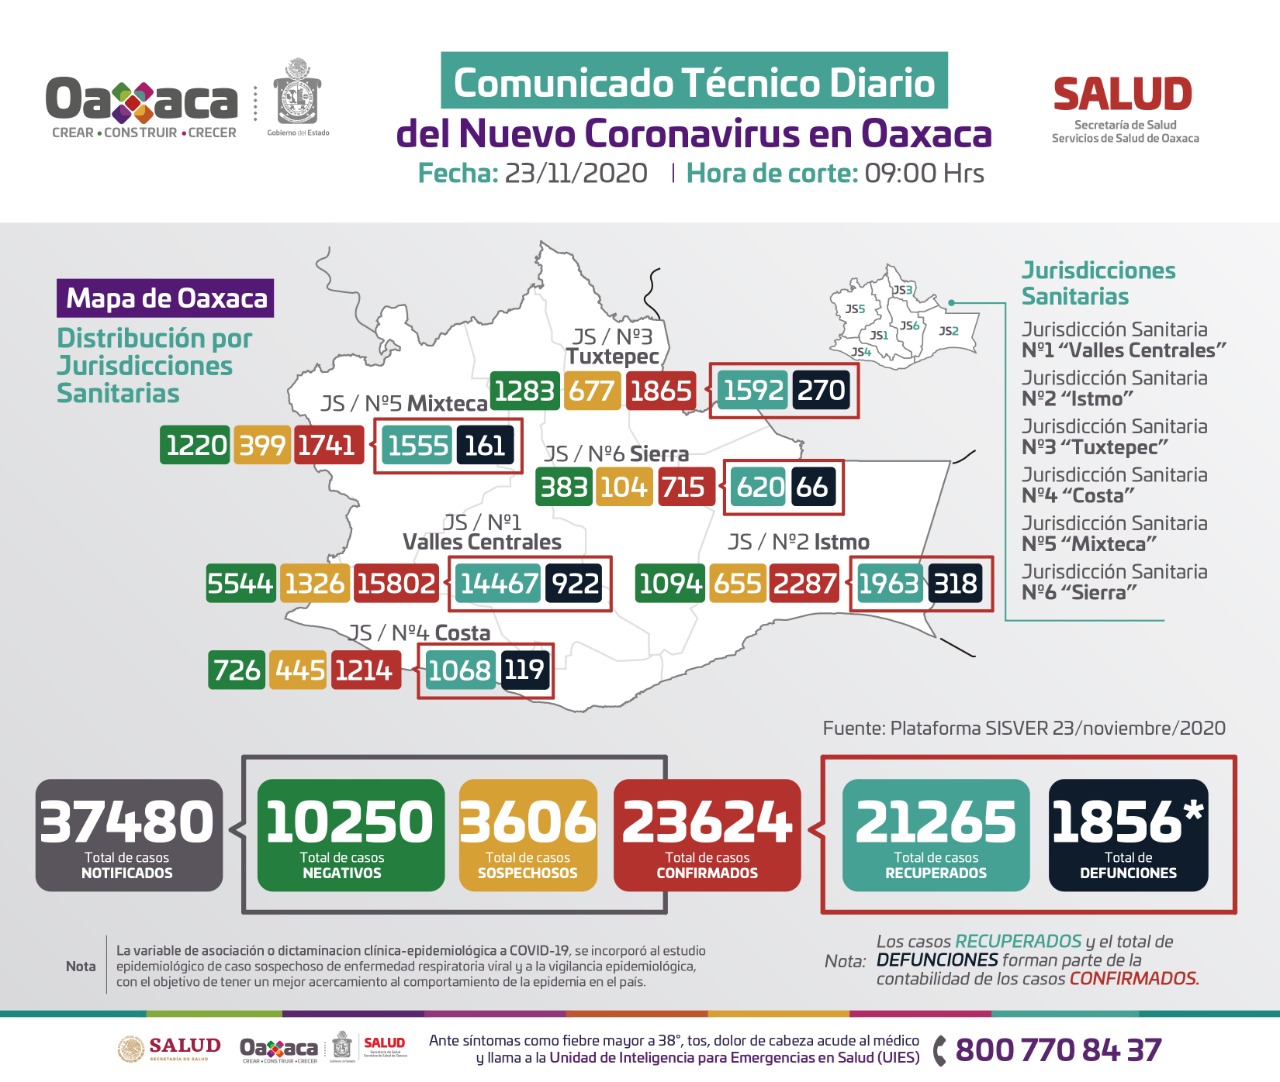 Presenta Jurisdicción de Valles Centrales 67% de casos de Covid-19 en Oaxaca